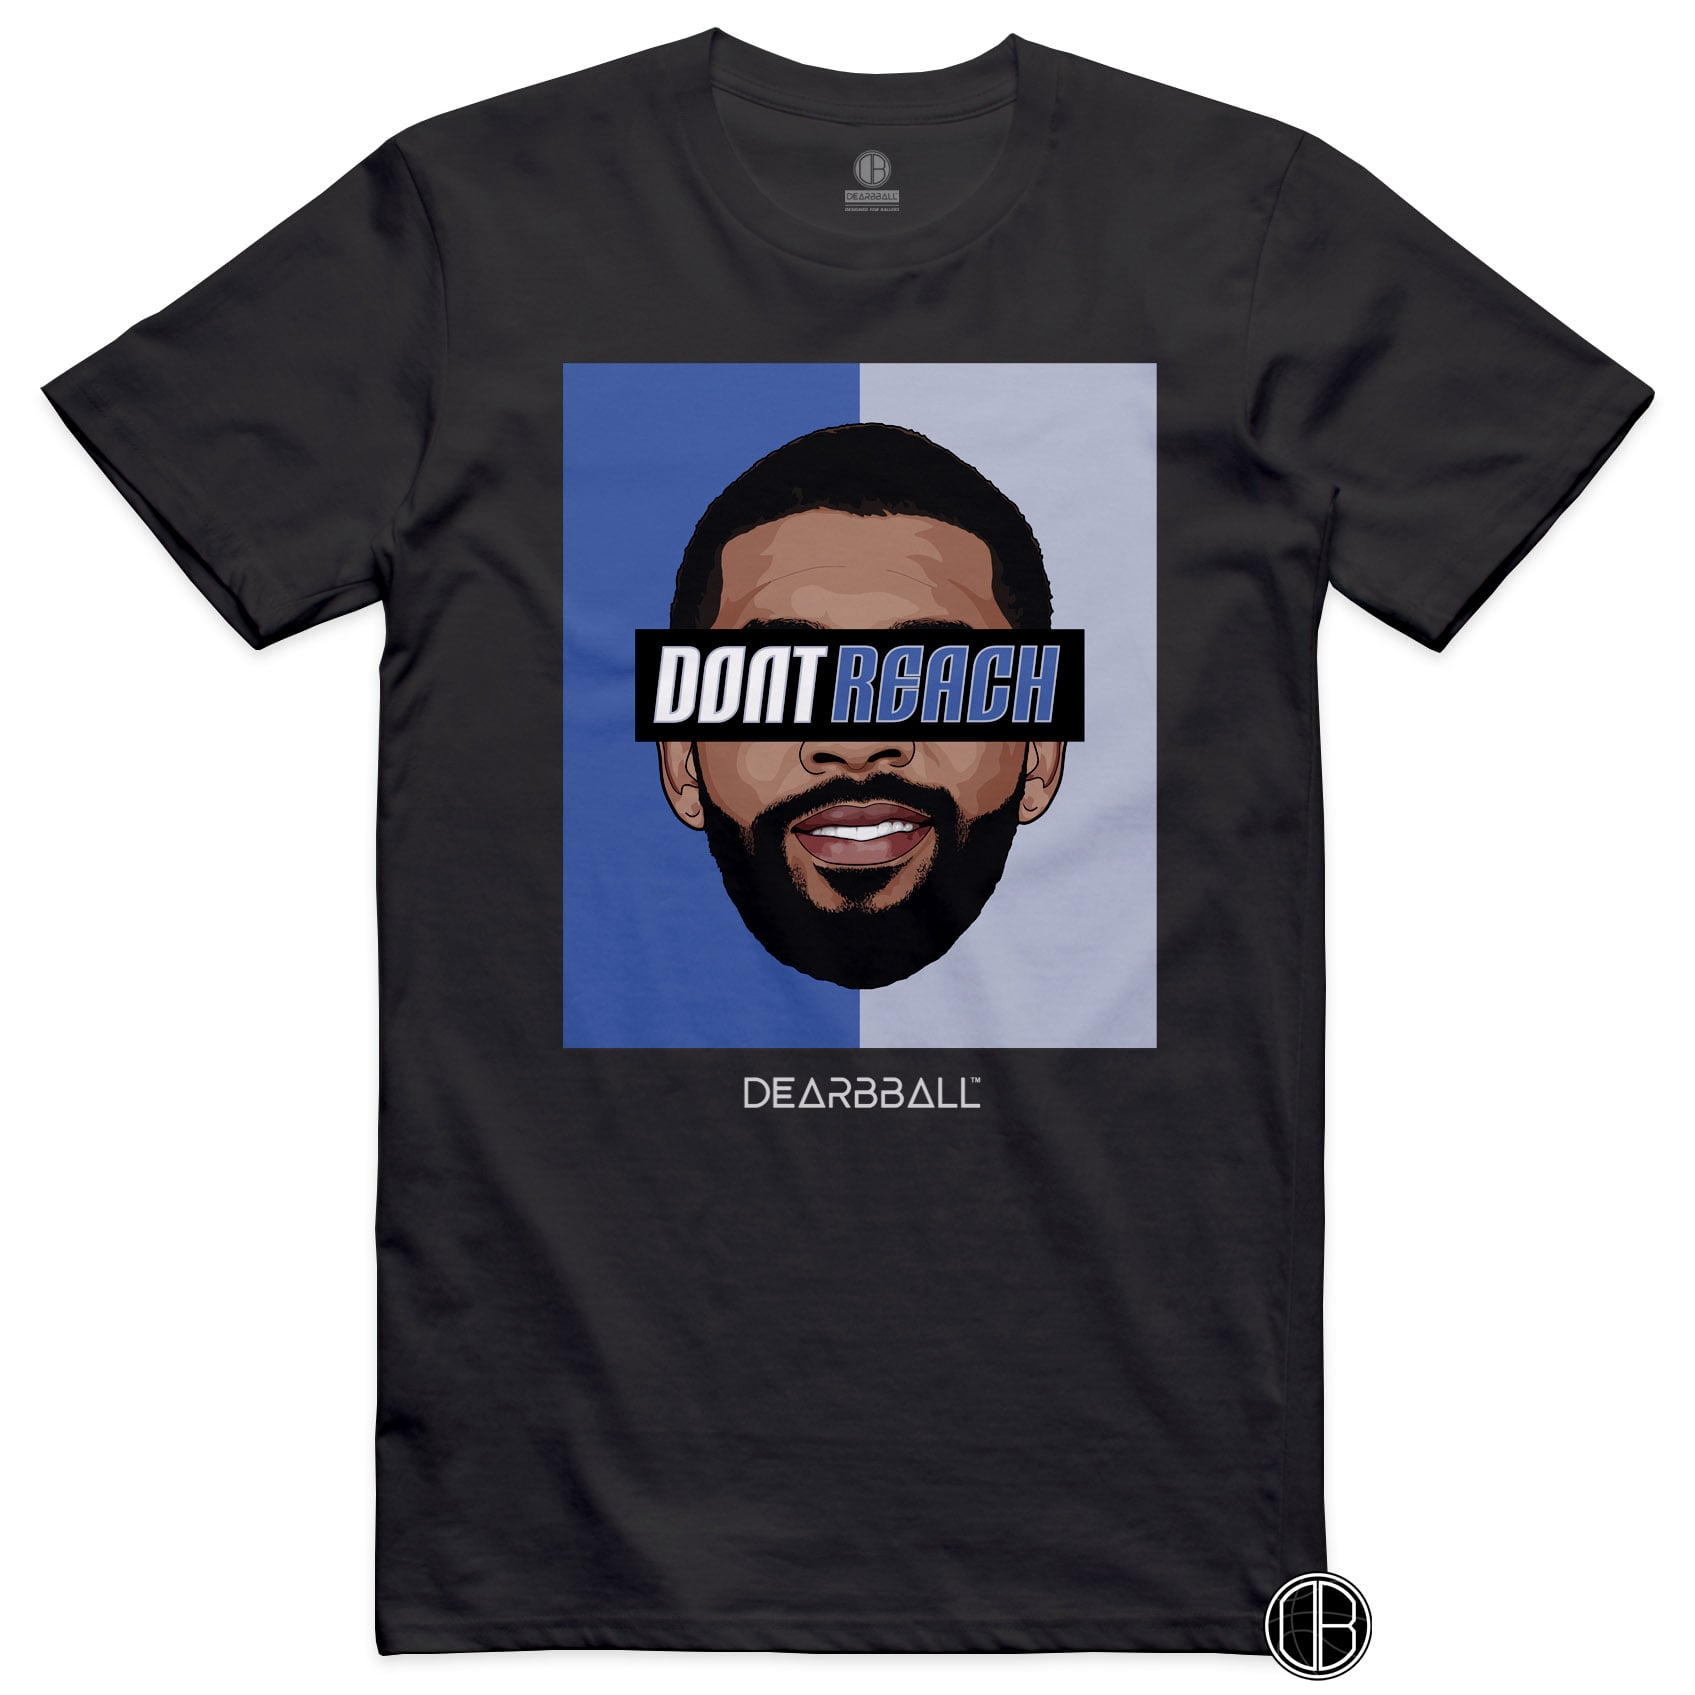 DearBBall T-Shirt - Drew Don't Reach Edition